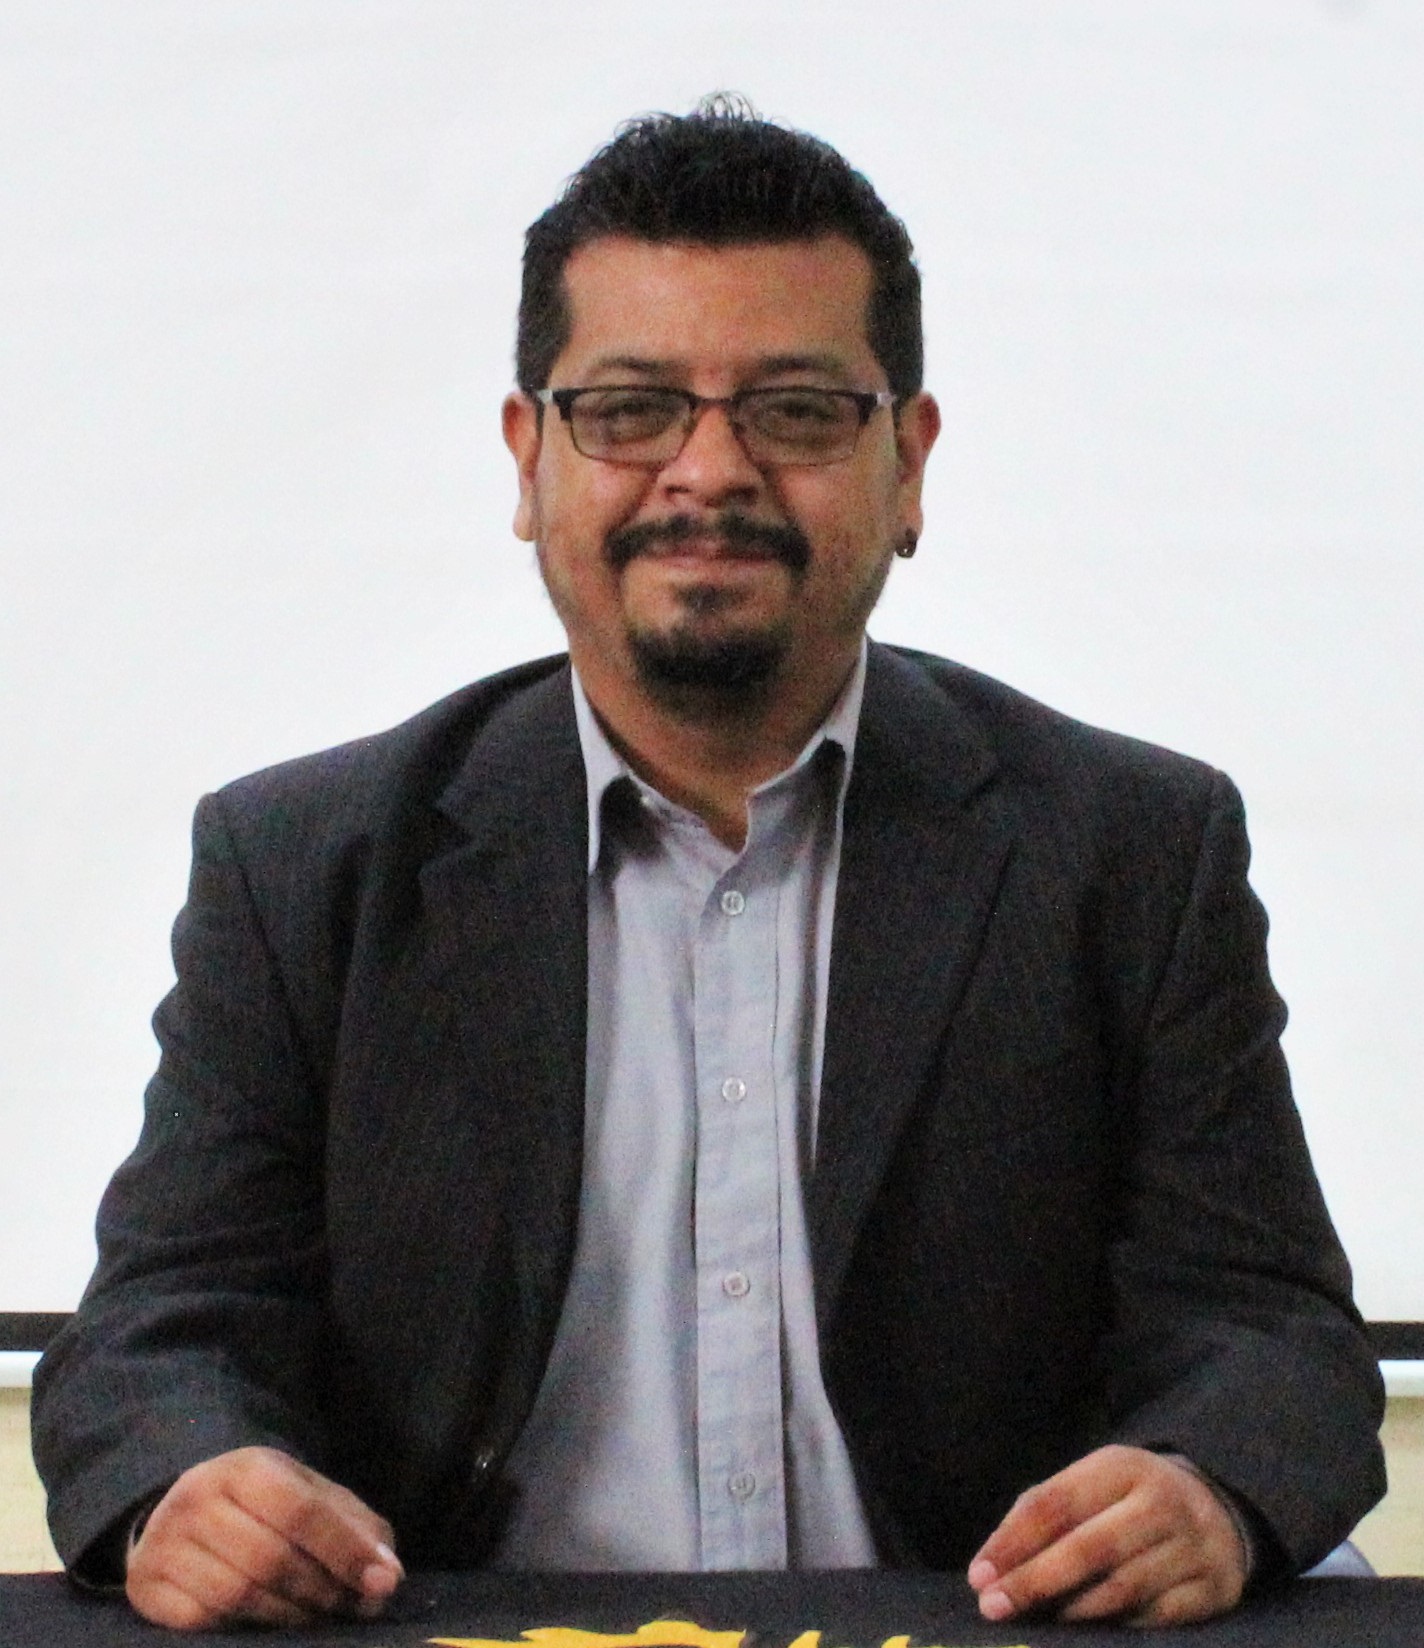 Dr. Emmanuel Gomez Ramirez